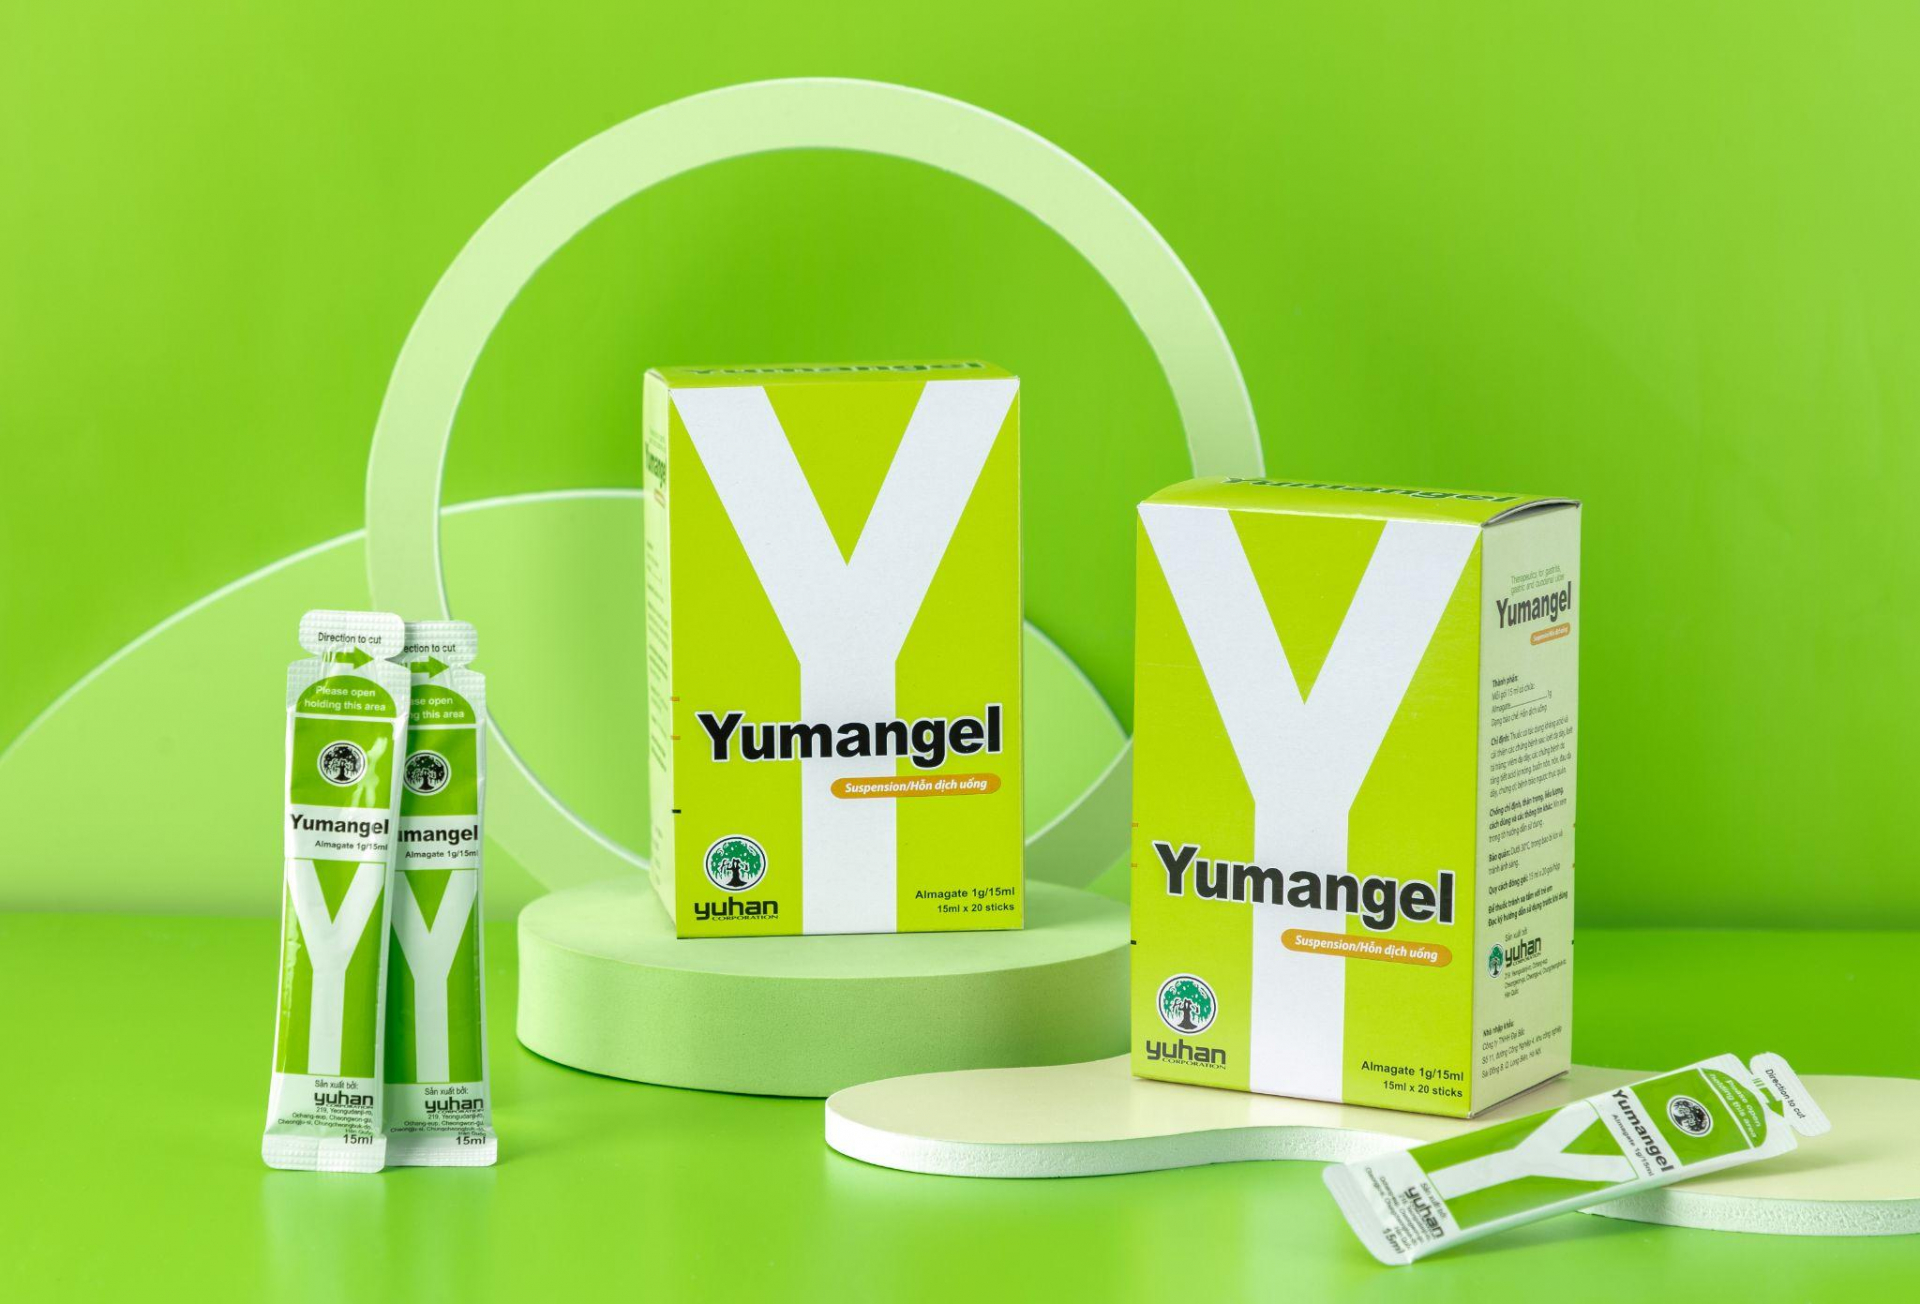 Thuốc dạ dày chữ Y – Yumangel giúp giảm nhanh các triệu chứng khó chịu của bệnh viêm loét dạ dày.

